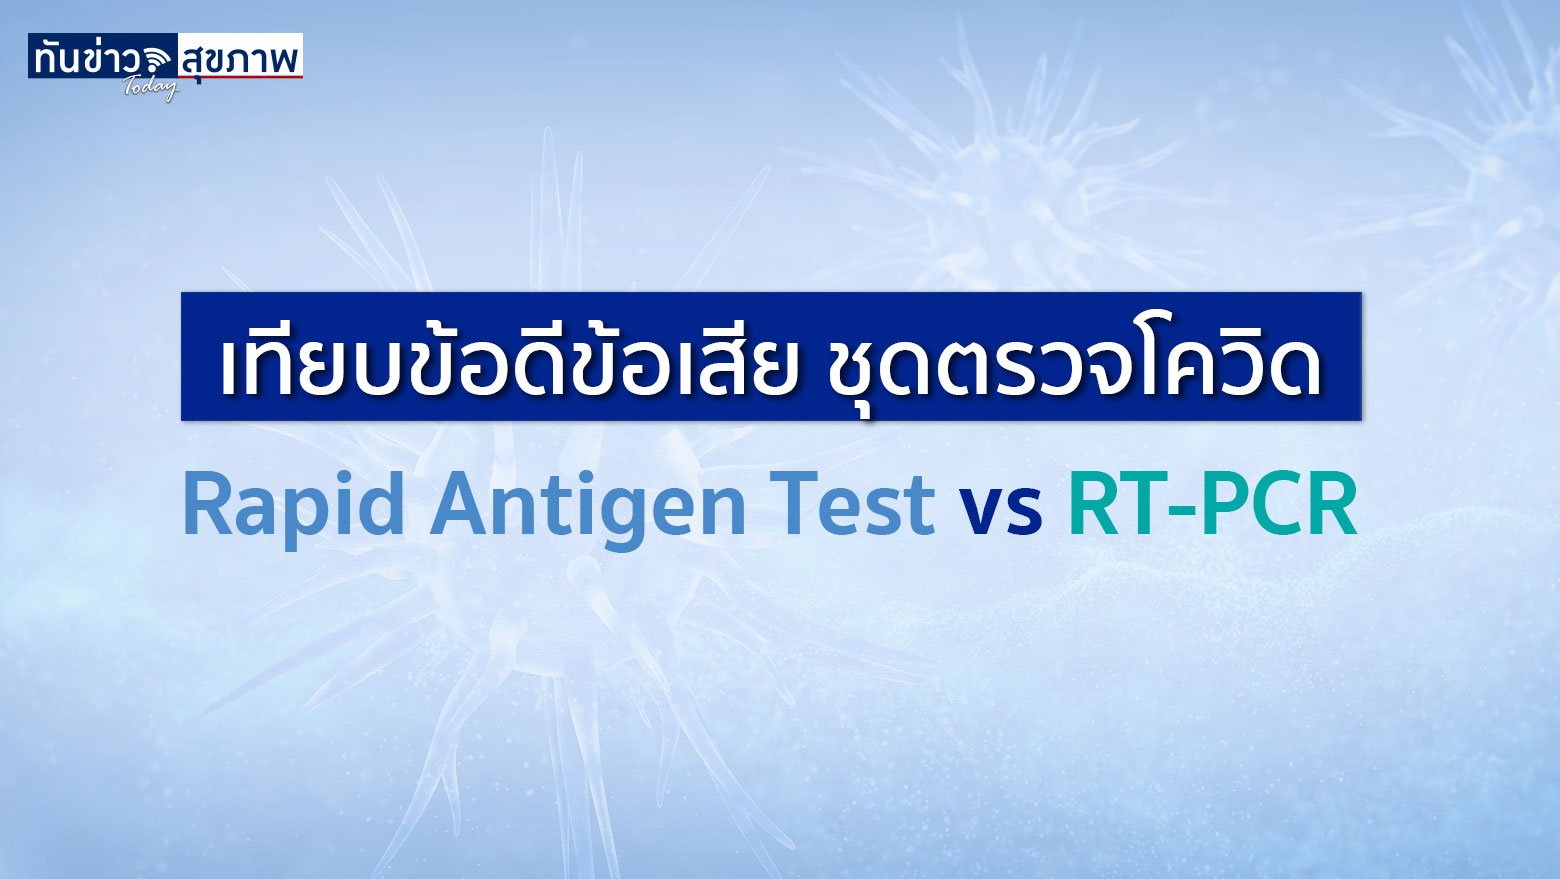 เทียบข้อดีข้อเสีย ชุดตรวจโควิด Rapid Antigen Test vs RT-PCR